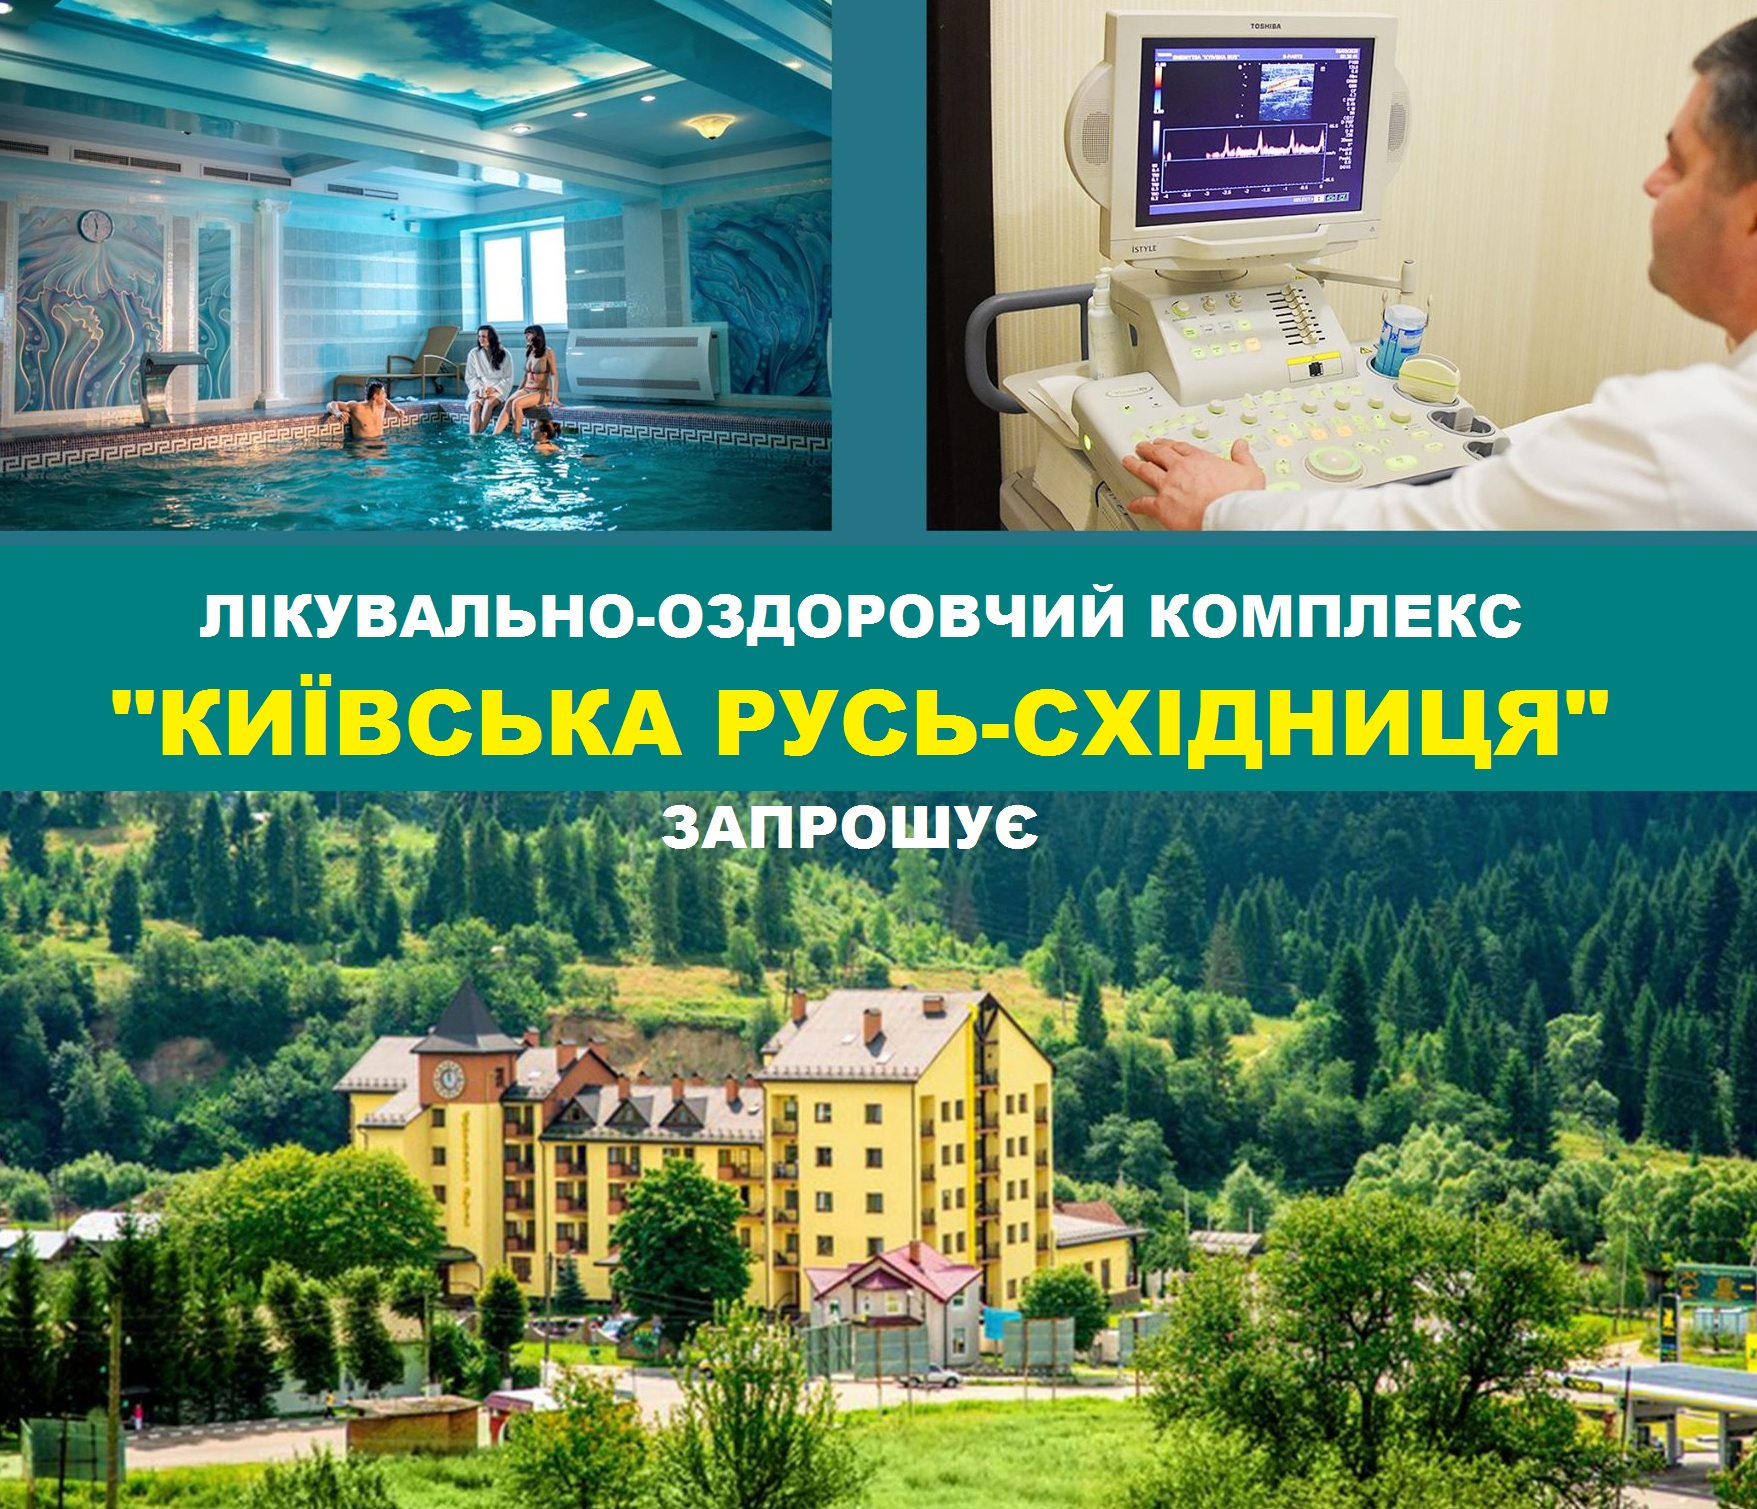 Лечебно-оздоровительный комплекс «Киевская Русь-Сходница» приглашает